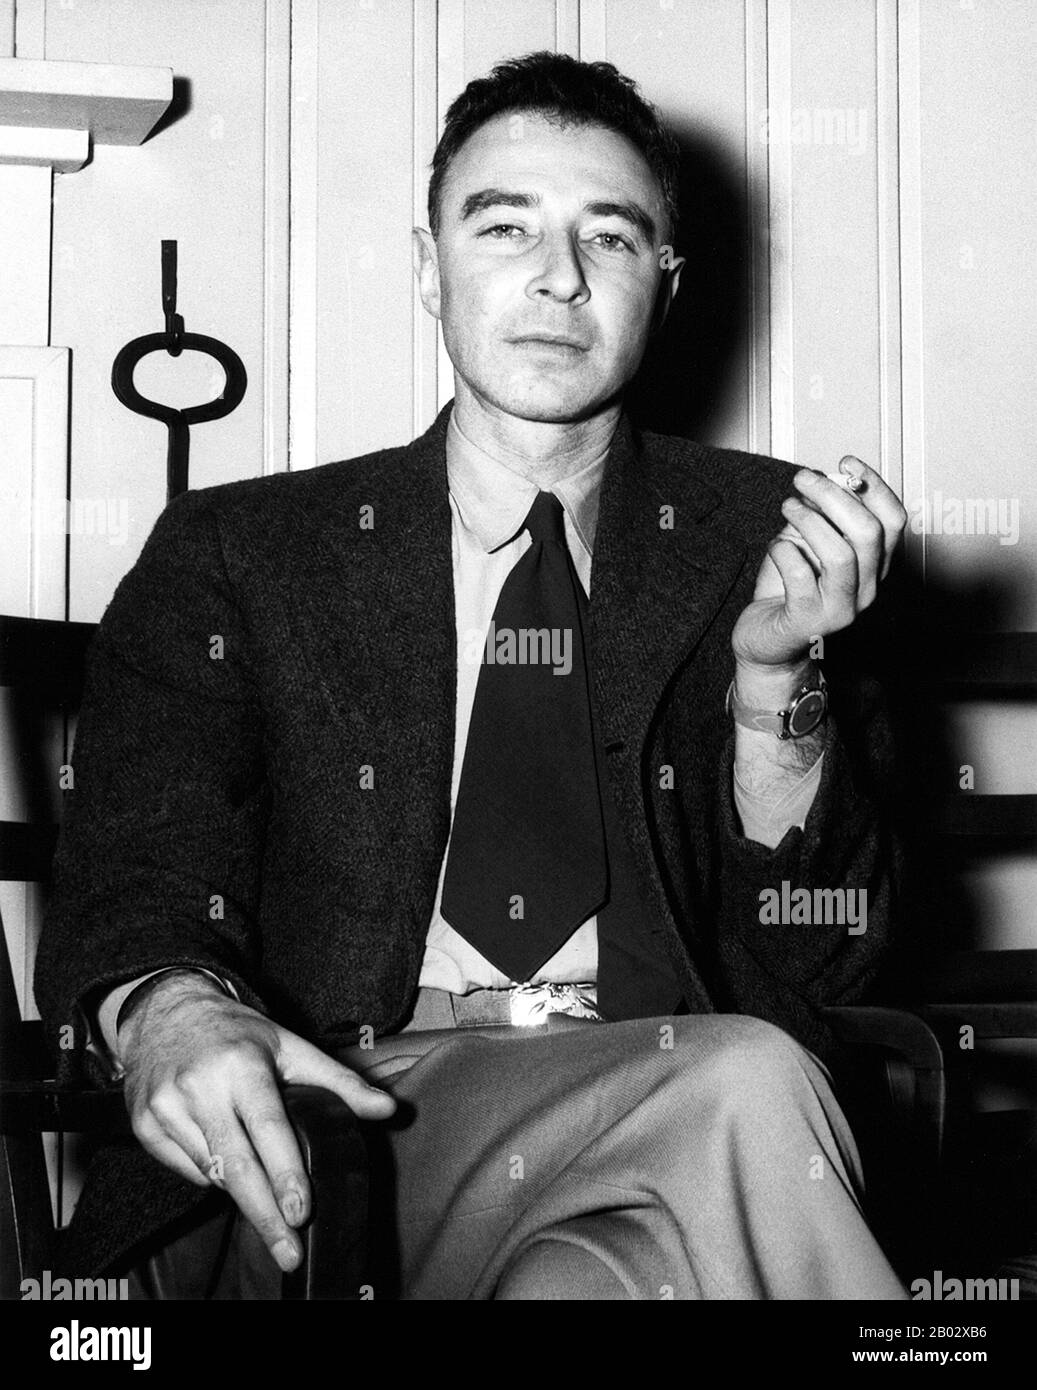 Julius Robert Oppenheimer (* 22. April 1904/05; † 18. Februar 1967) war ein US-amerikanischer theoretischer Physiker und Professor für Physik an der University of California, Berkeley. Er gehört zu den Personen, die oft als "Vater der Atombombe" für ihre Rolle im Manhattan-Projekt, dem zweiten Weltkrieg, das die ersten Atomwaffen entwickelt hat, bezeichnet werden. Die erste Atombombe wurde am 16. Juli 1945 im Dreifaltigkeitstest in New Mexico detoniert; Oppenheimer bemerkte später, dass sie Worte aus der Bhagavad Gita ins Gedächtnis brachte: "Jetzt werde ich Tod, der Zerschlager der Welten". Nach dem Krieg wurde er A. Stockfoto